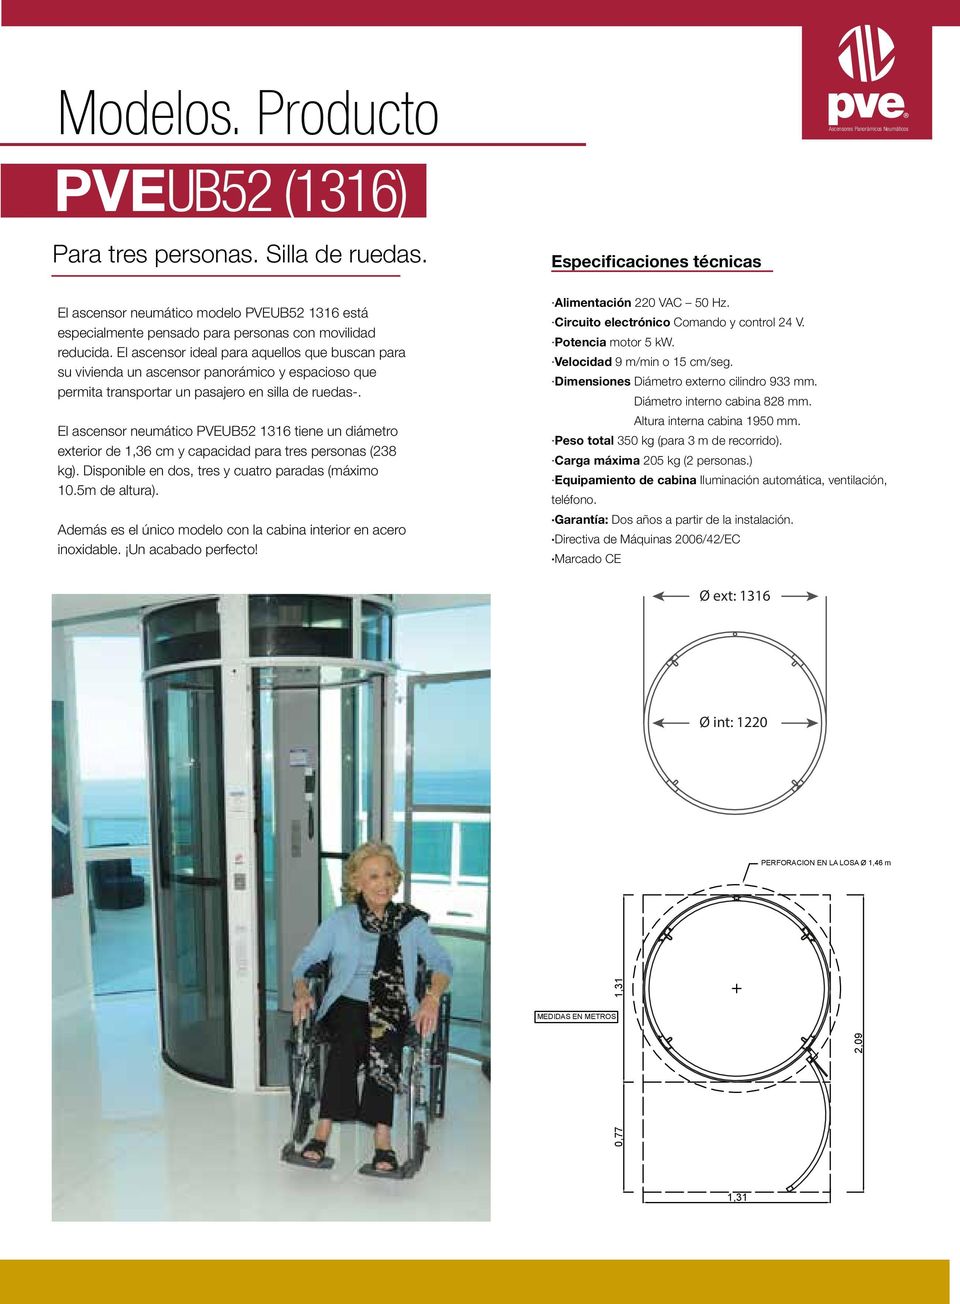 El ascensor ideal para aquellos que buscan para su vivienda un ascensor panorámico y espacioso que permita transportar un pasajero en silla de ruedas-.